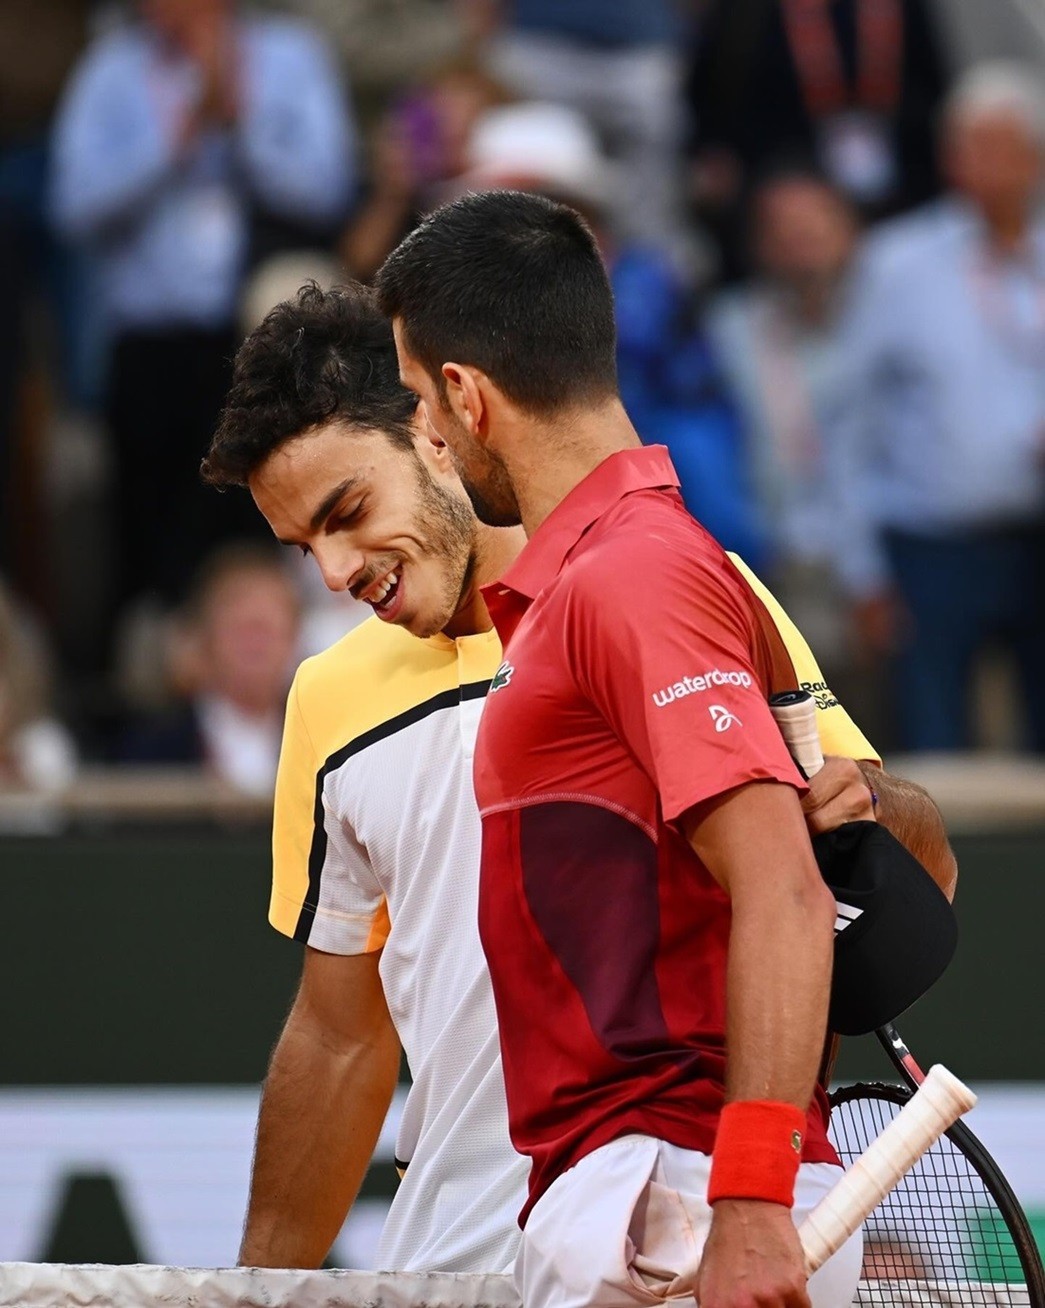 Sang set 4, Djokovic bị bẻ game từ sớm nhưng anh nén đau và thể hiện bản lĩnh của hạt giống số 1. Tay vợt kỳ cựu người Serbia từ đó thắng 7-5 để đưa trận đấu vào set 5 quyết định. (Nguồn: Roland Garros)